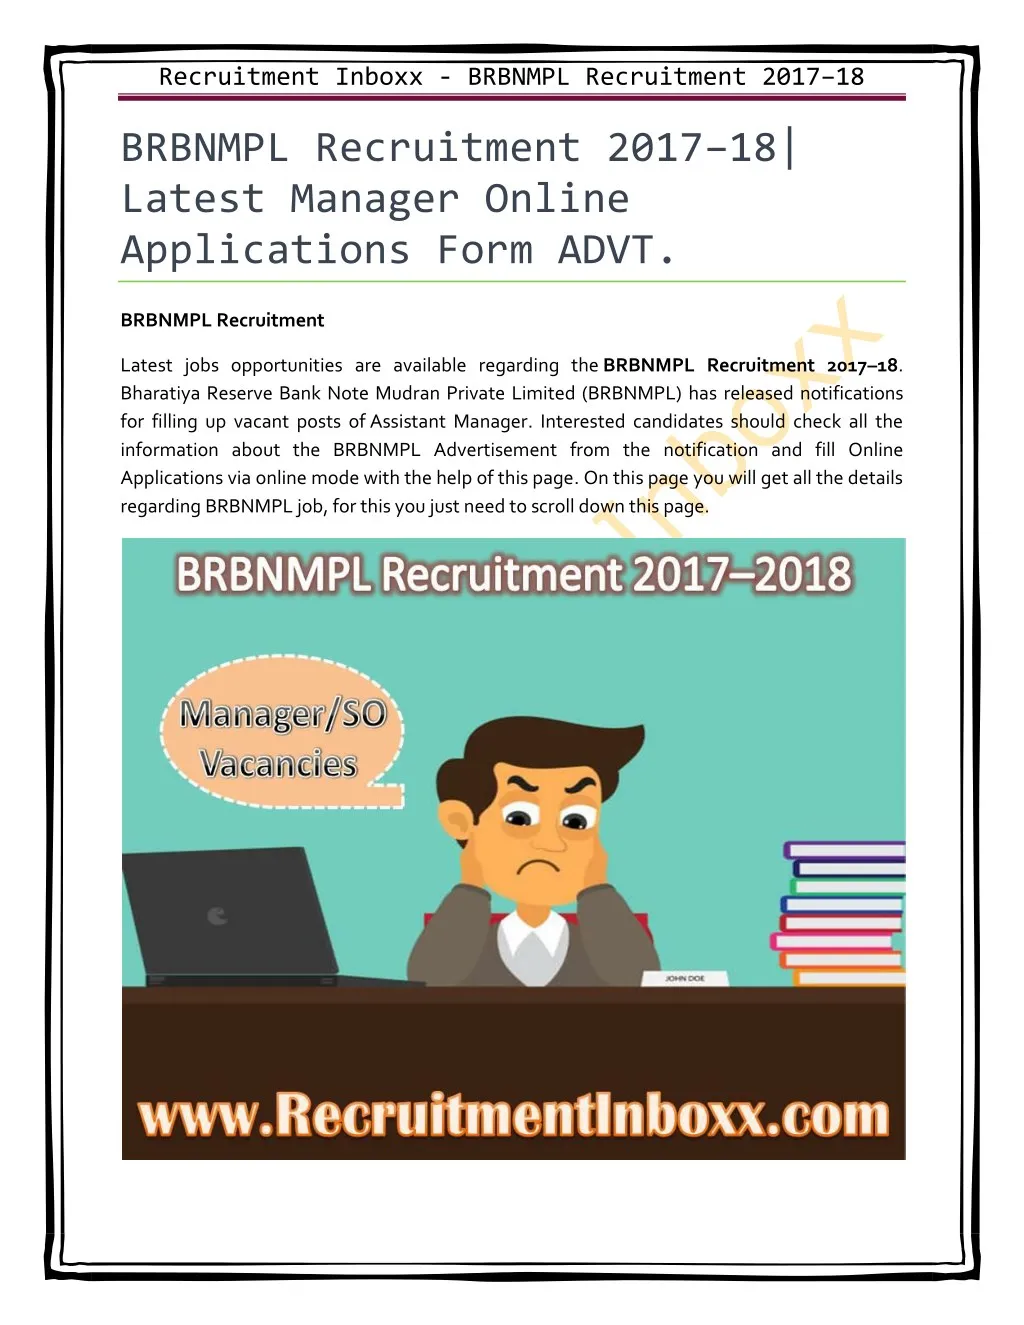 recruitment inboxx brbnmpl recruitment 2017 18